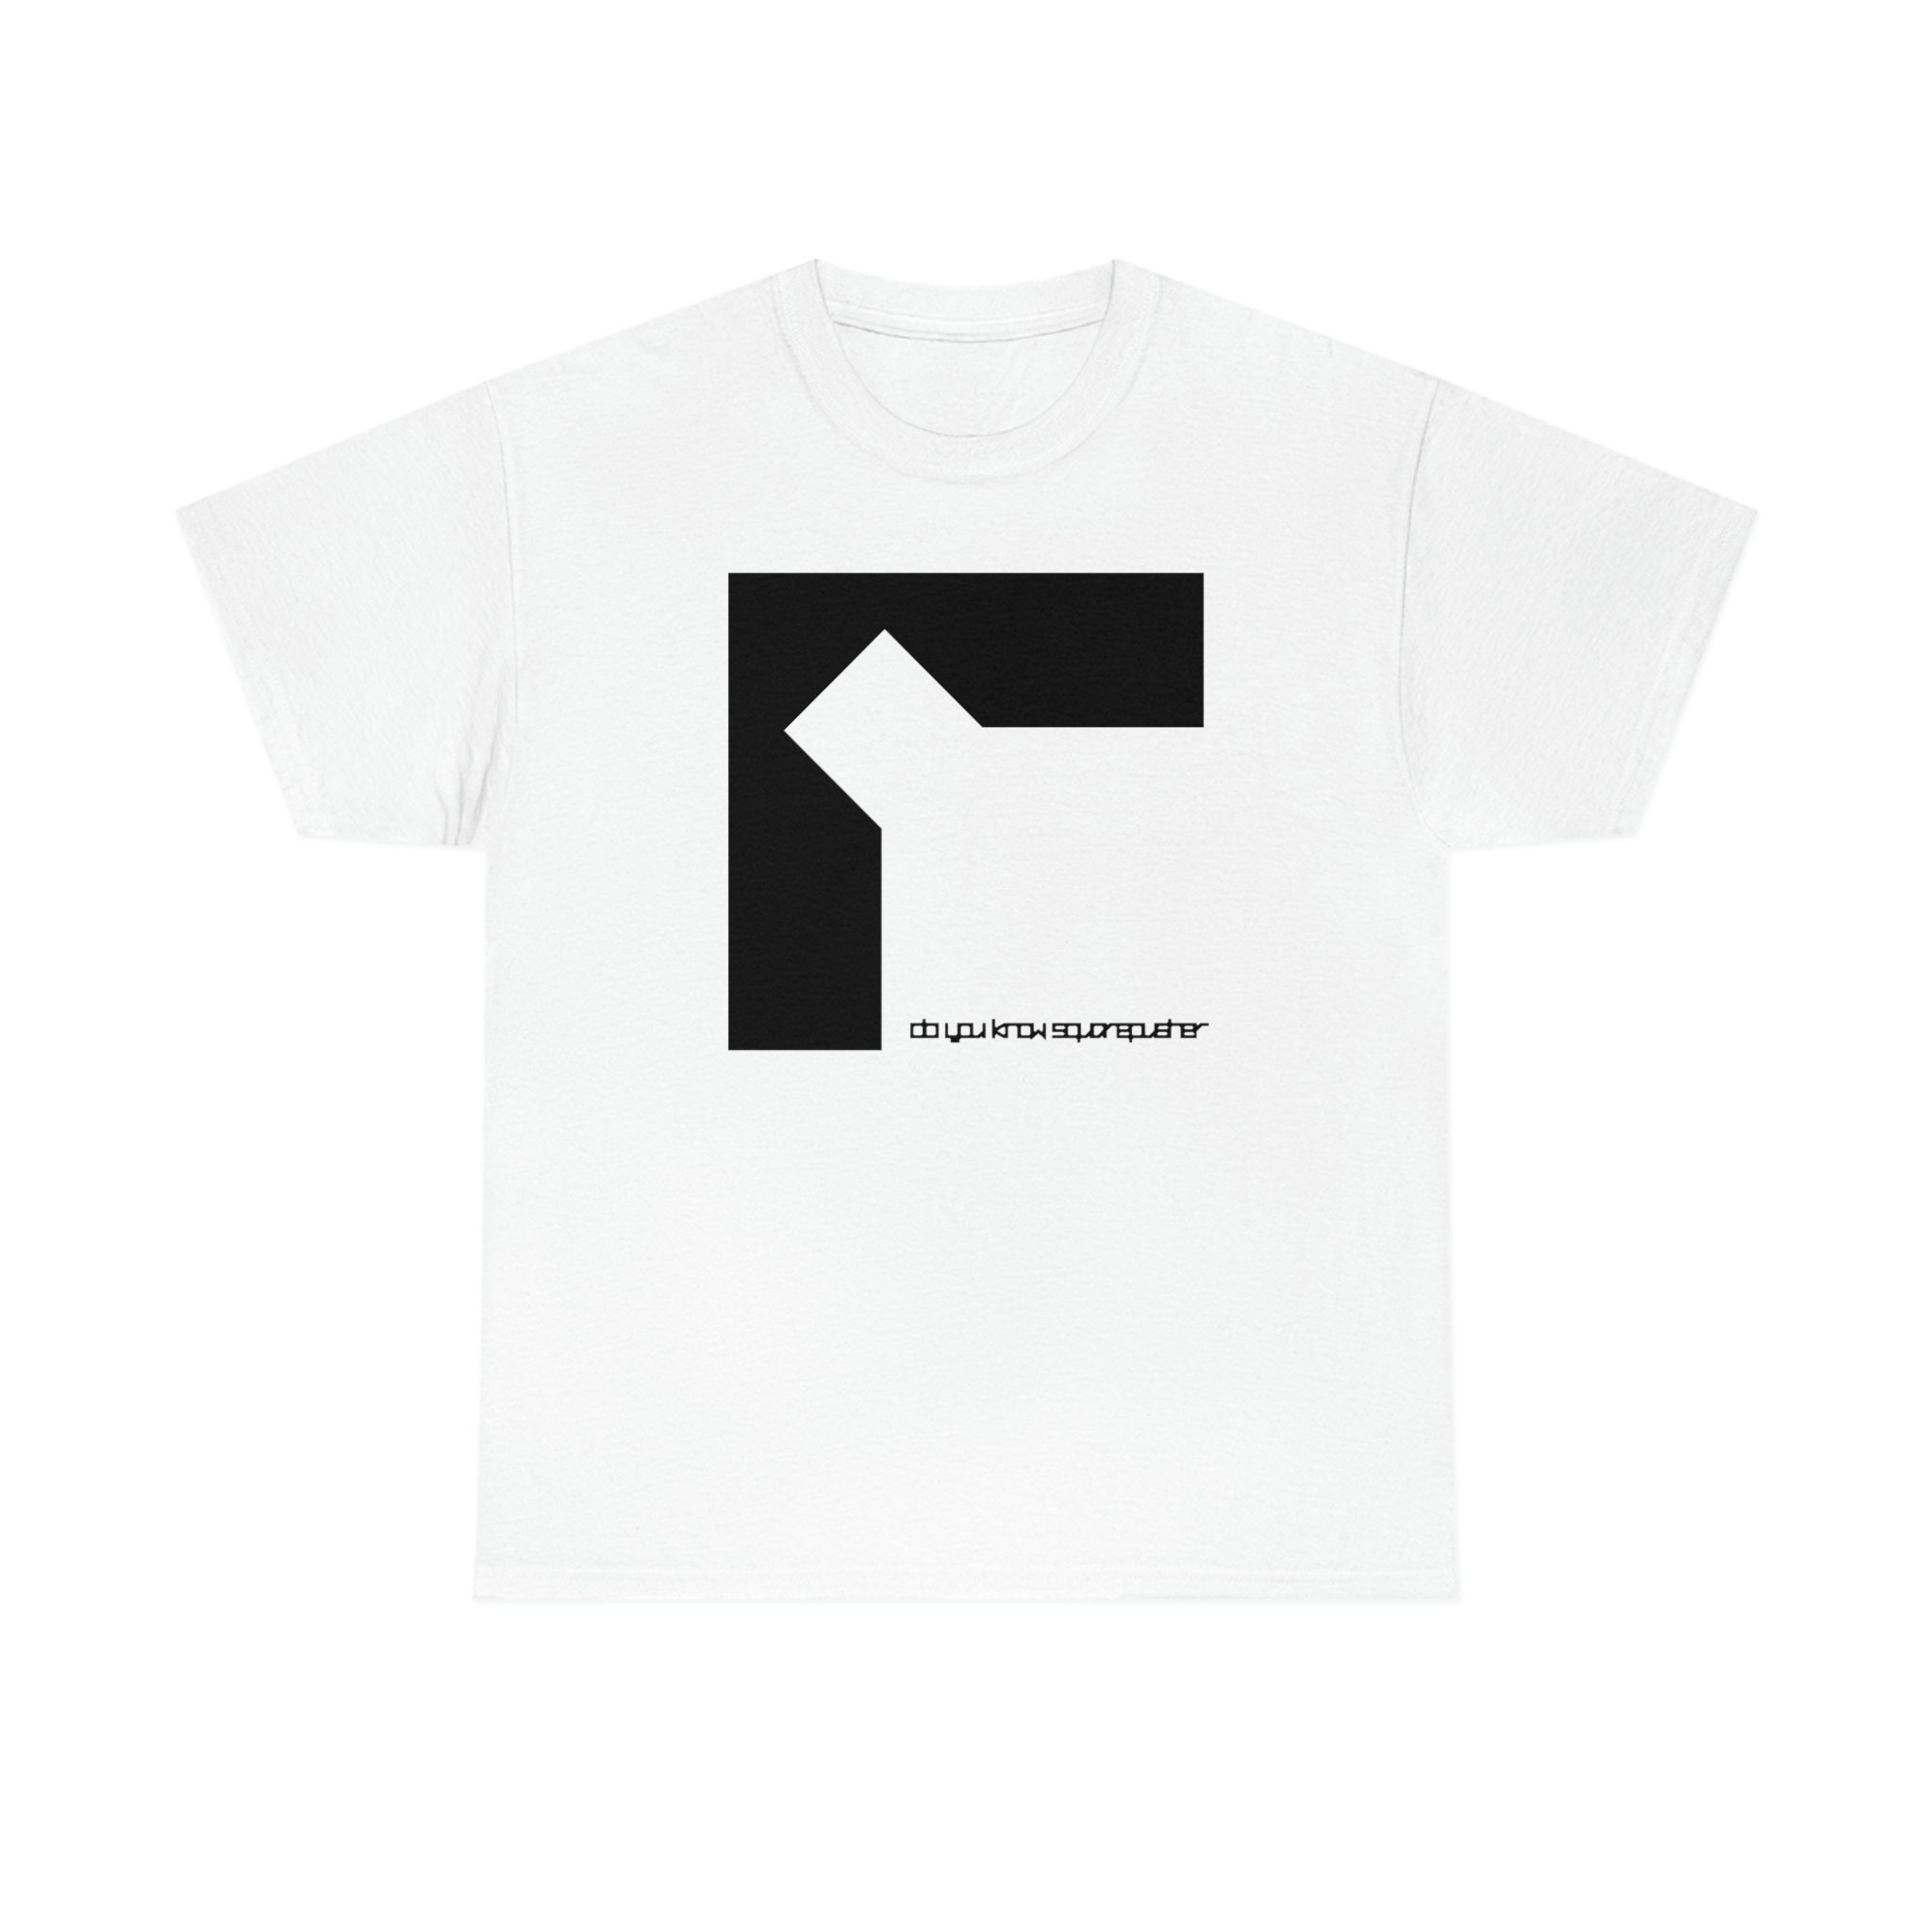 Do You Know Squarepusher Album Cover Art T-shirt Merch Original Design ...